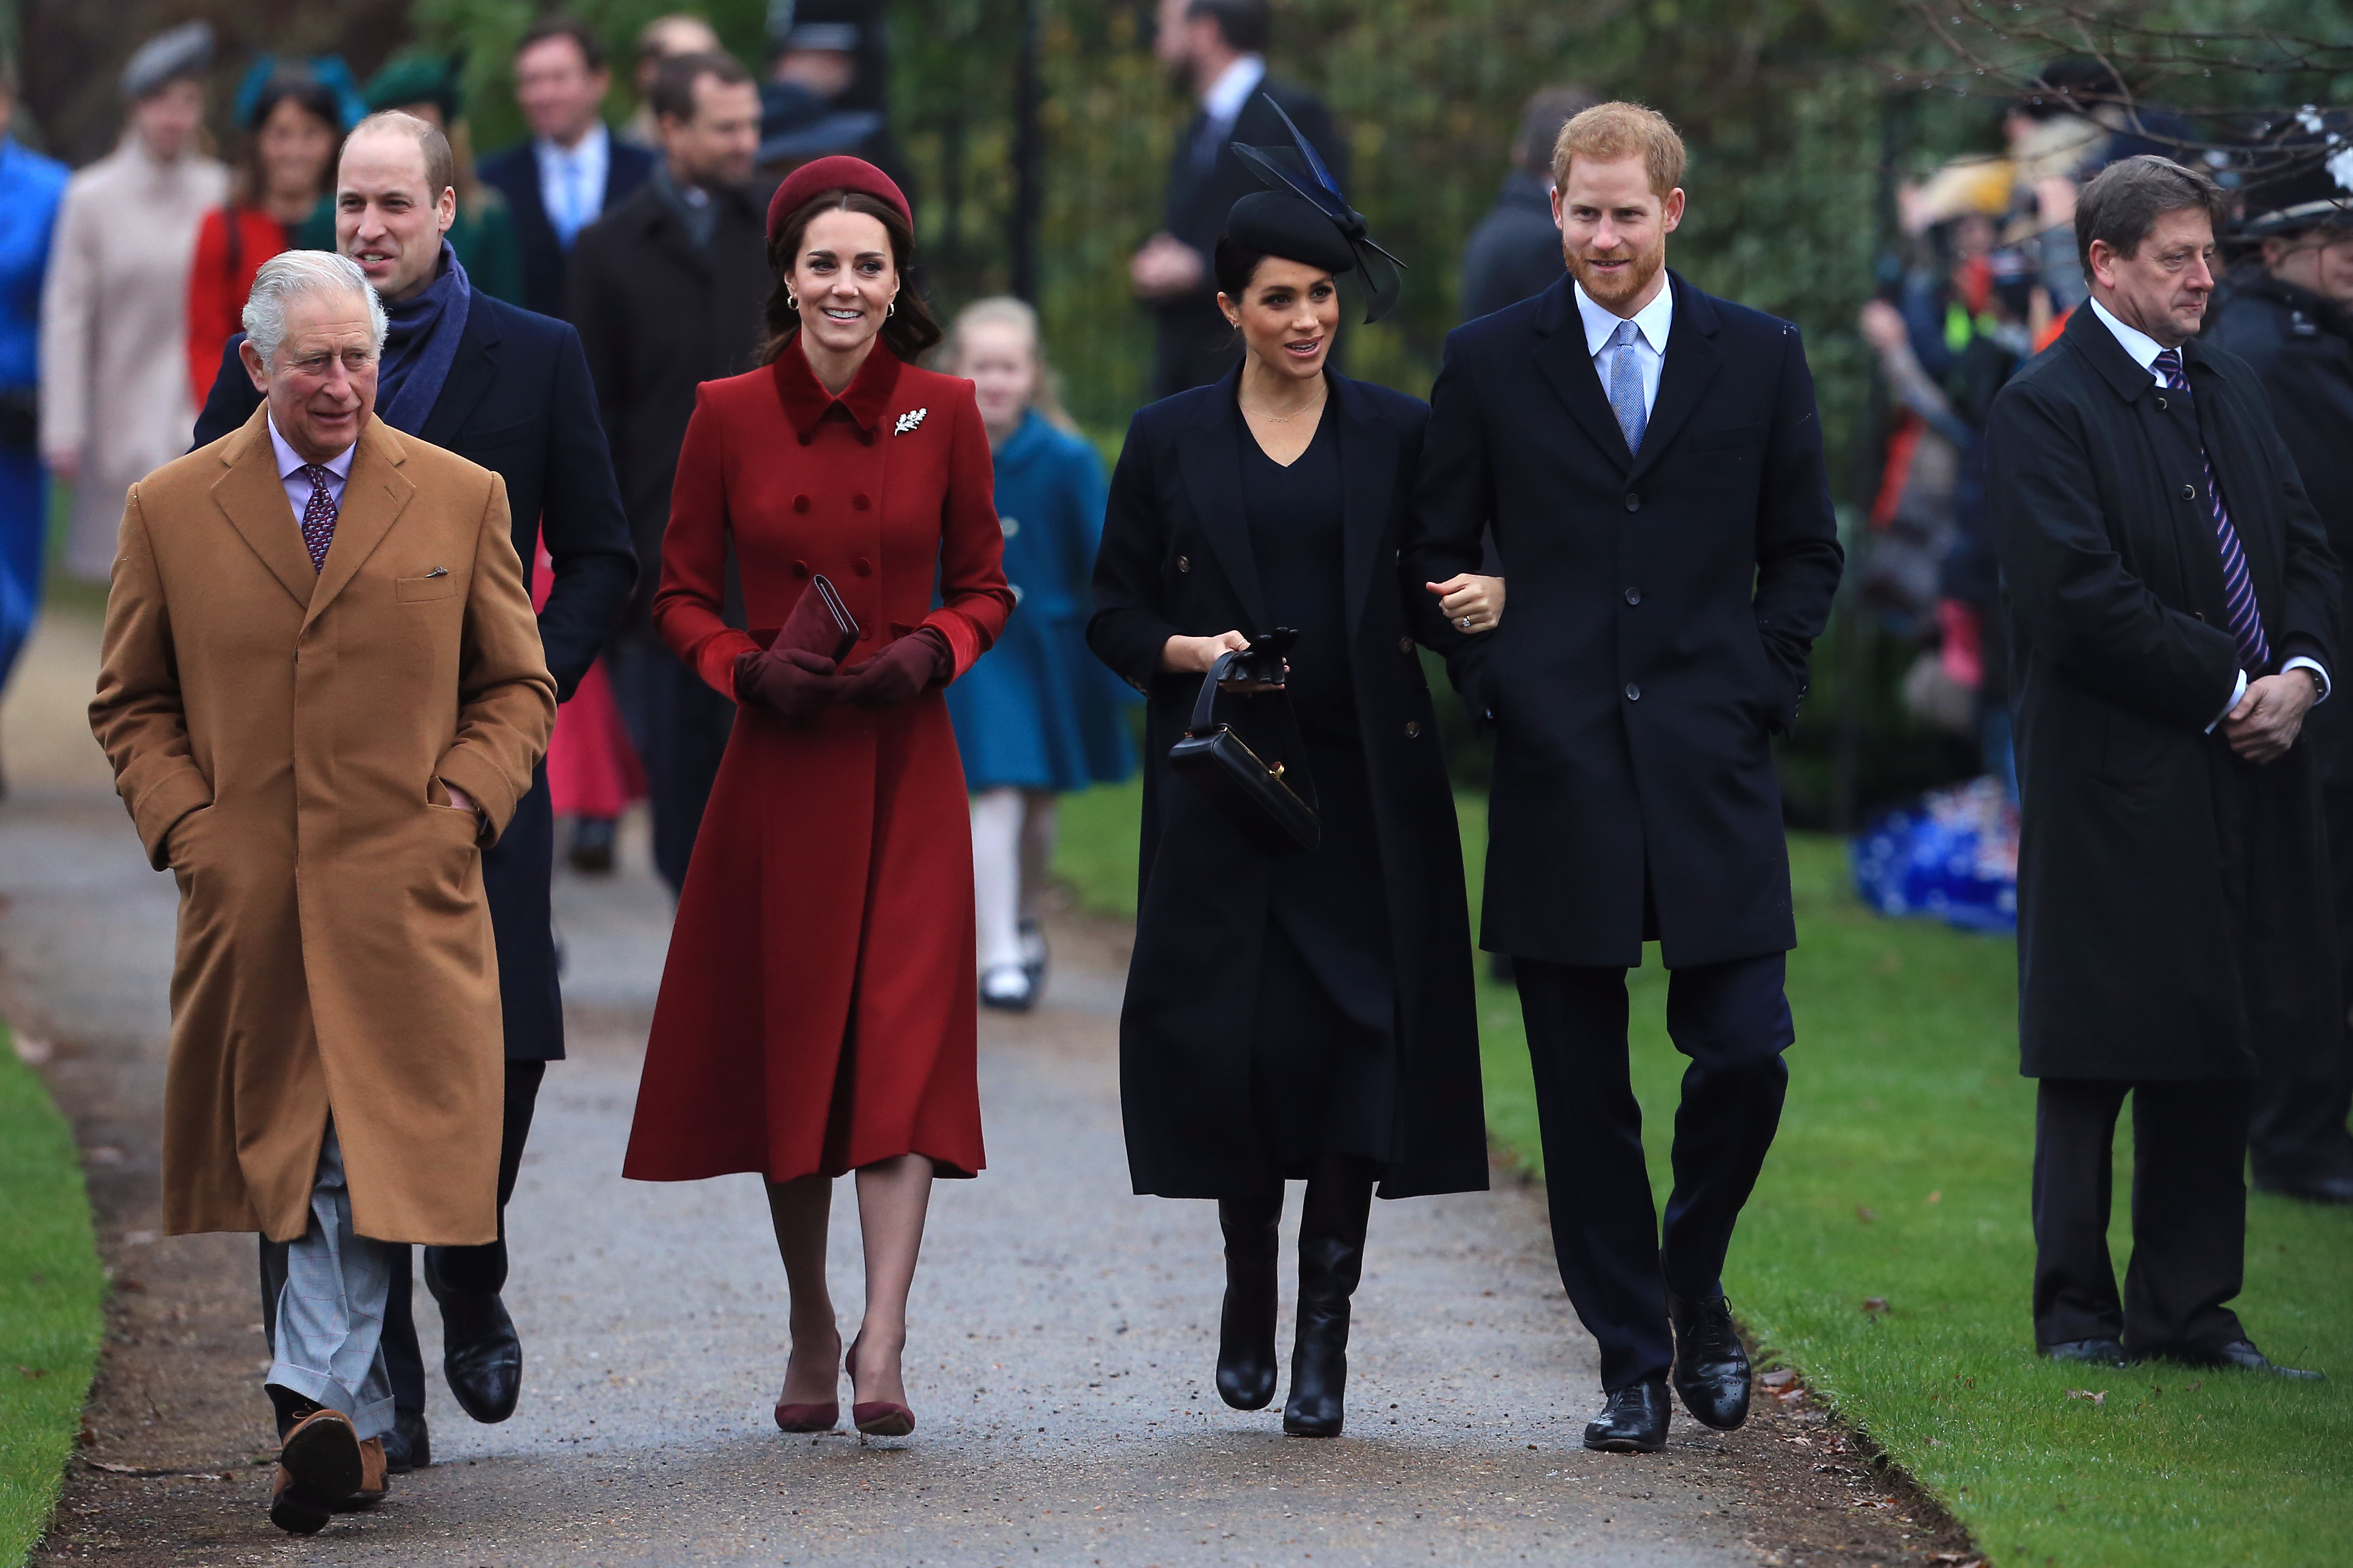 Le roi Charles, le prince William, Catherine, Meghan et le prince Harry assistent au service religieux du jour de Noël, le 25 décembre 2018 à King's Lynn, en Angleterre | Source : Getty Images